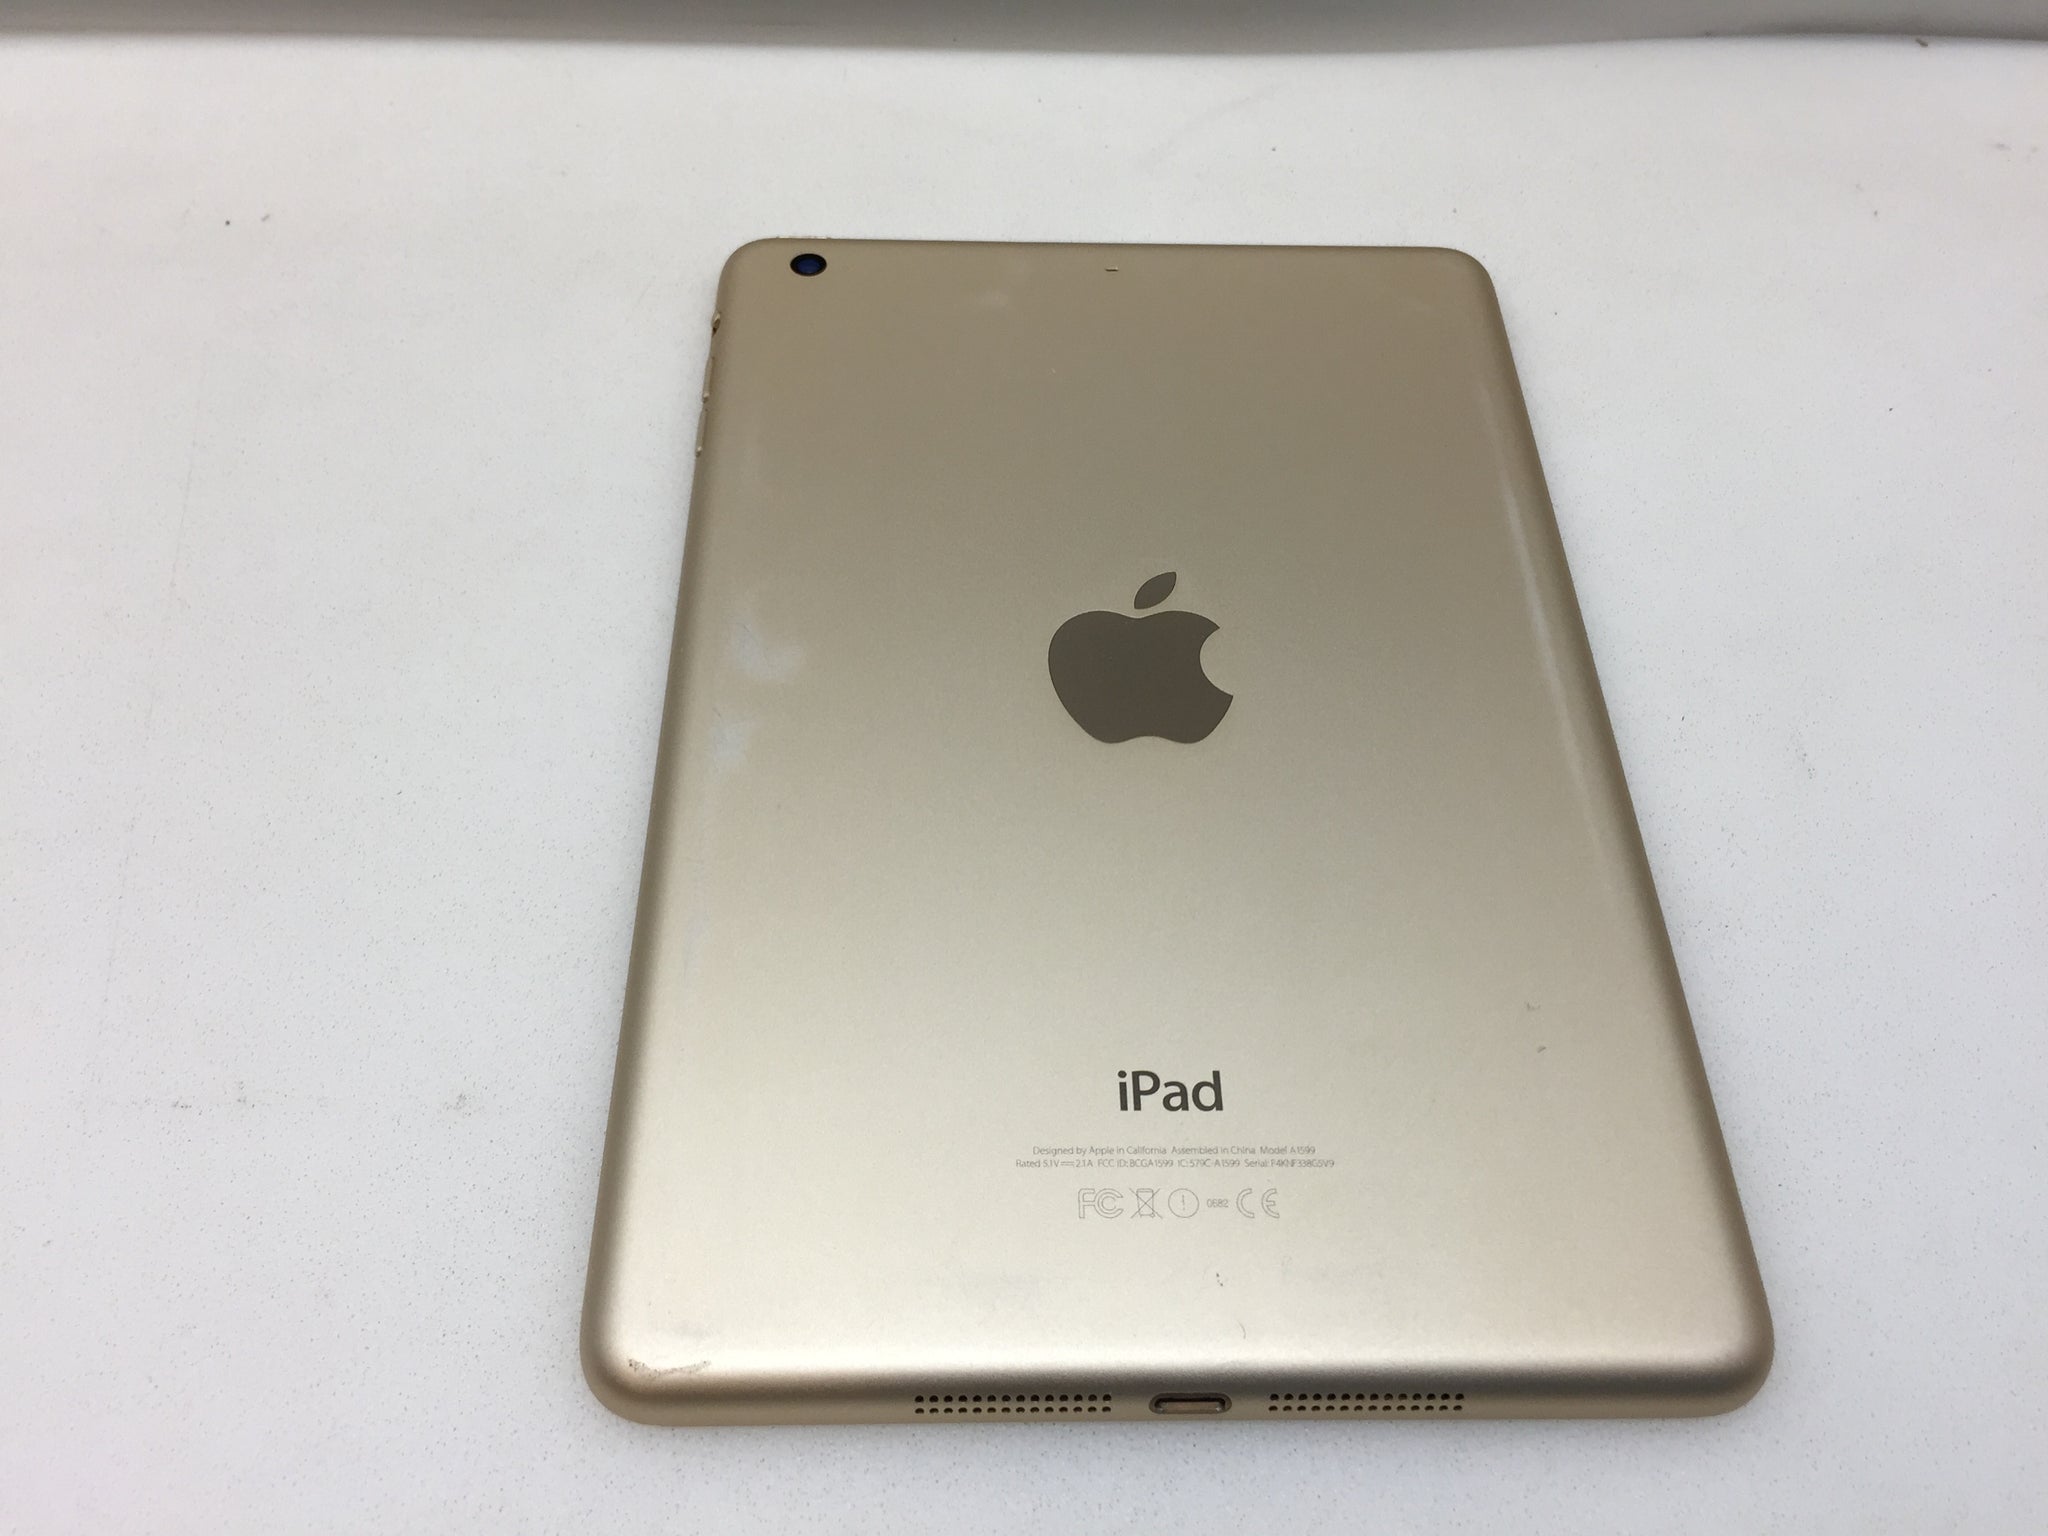 Apple iPad mini 3 MGYK2CL/A GB Wi Fi 7.9in Tablet Gold – NT